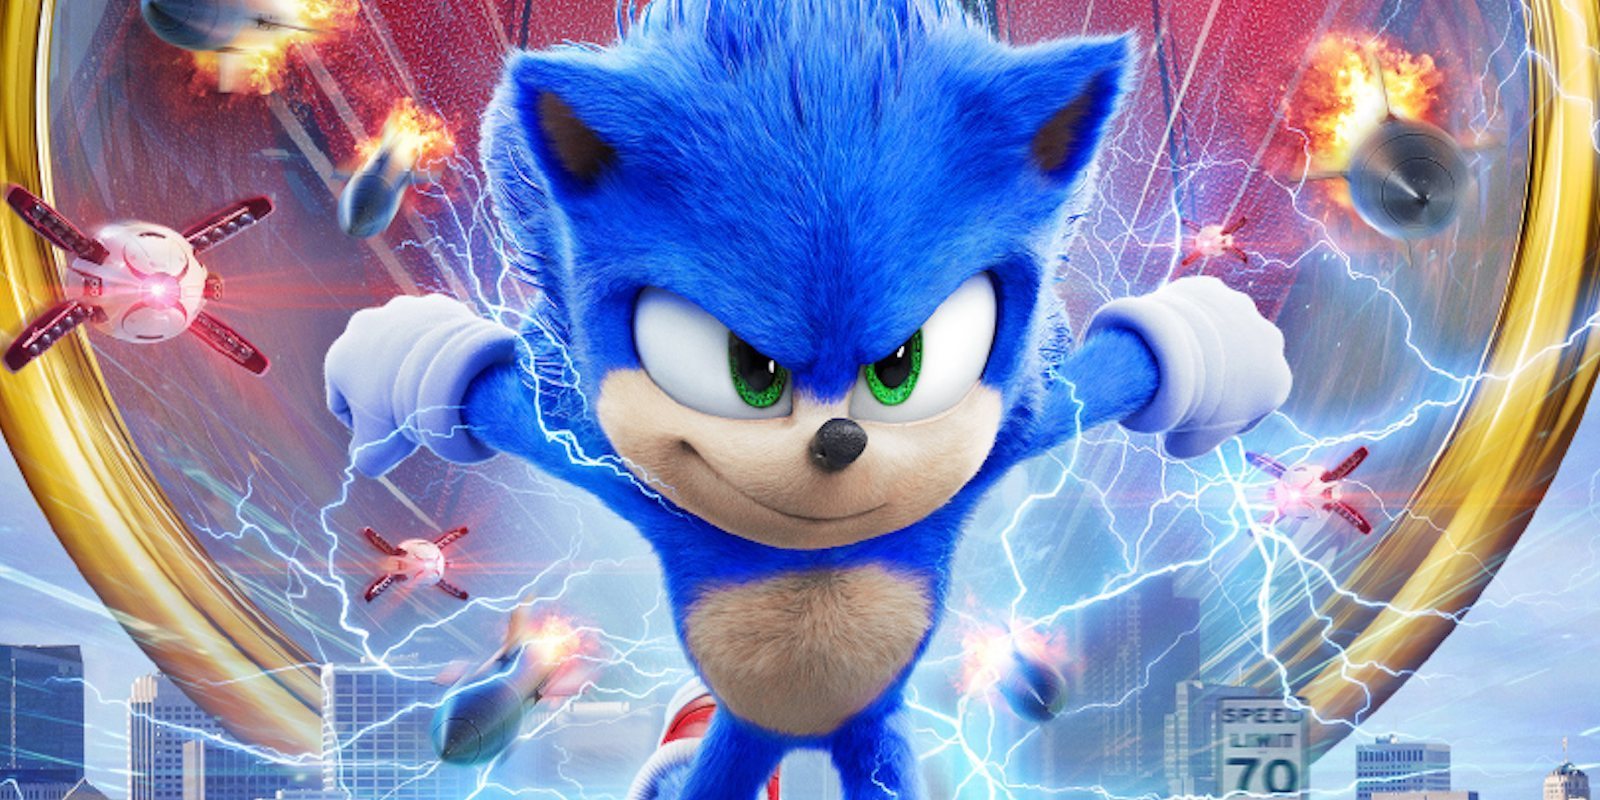 Paramount no estaba muy convencida del aspecto inicial de Sonic para su película